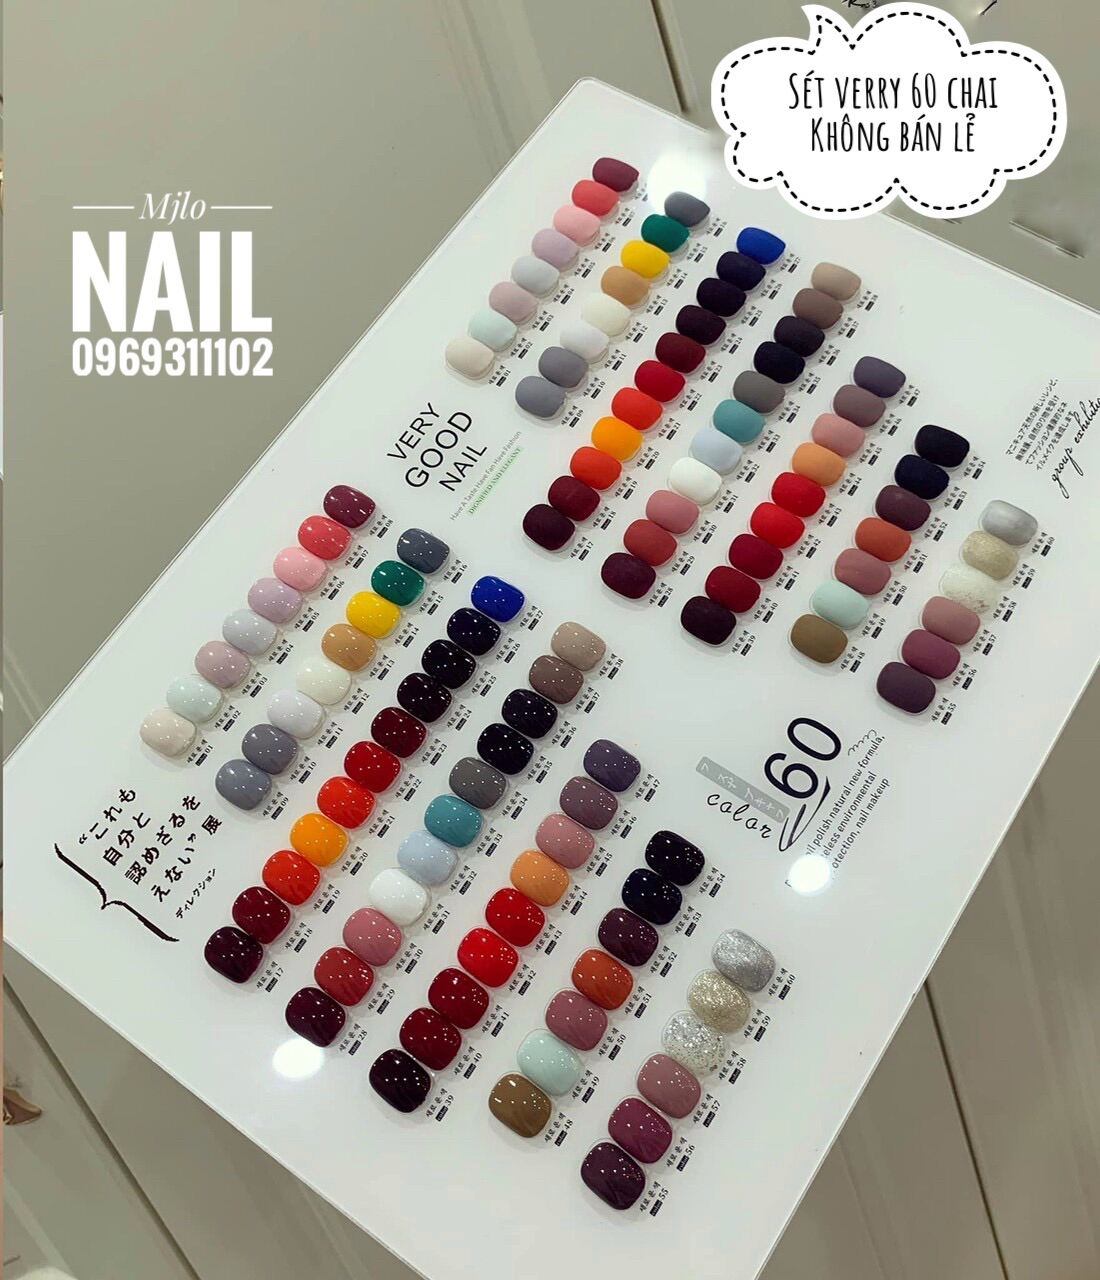 Sét 60 chai sơn gel very good nail ( mẫu new ) chai vuông, tặng kèm base top và bảng mầu